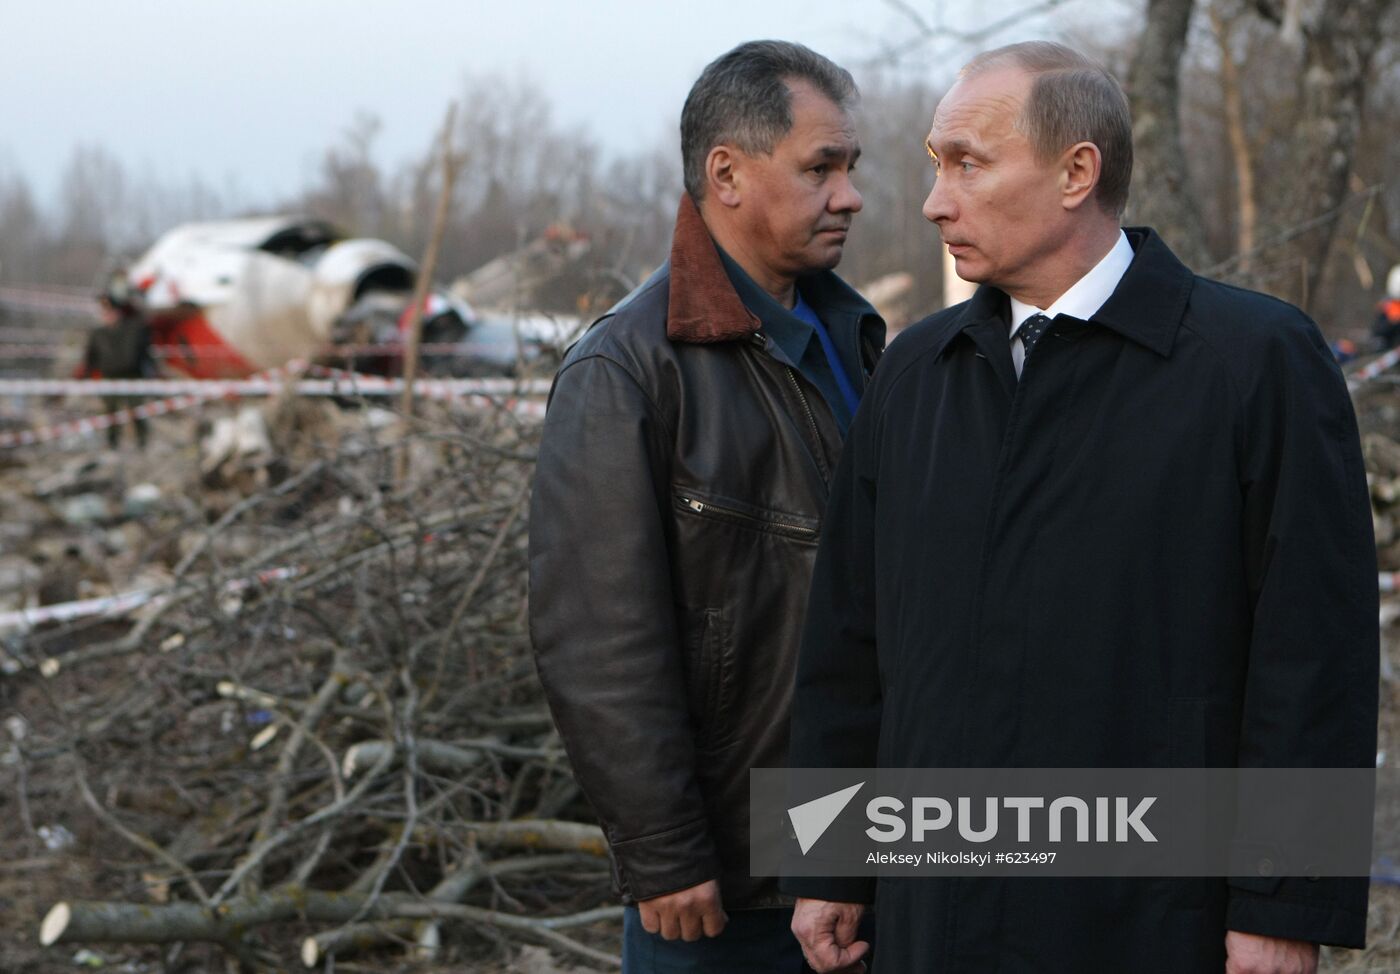 Vladimir Putin visits Polish Air Force Tu-154 crash site